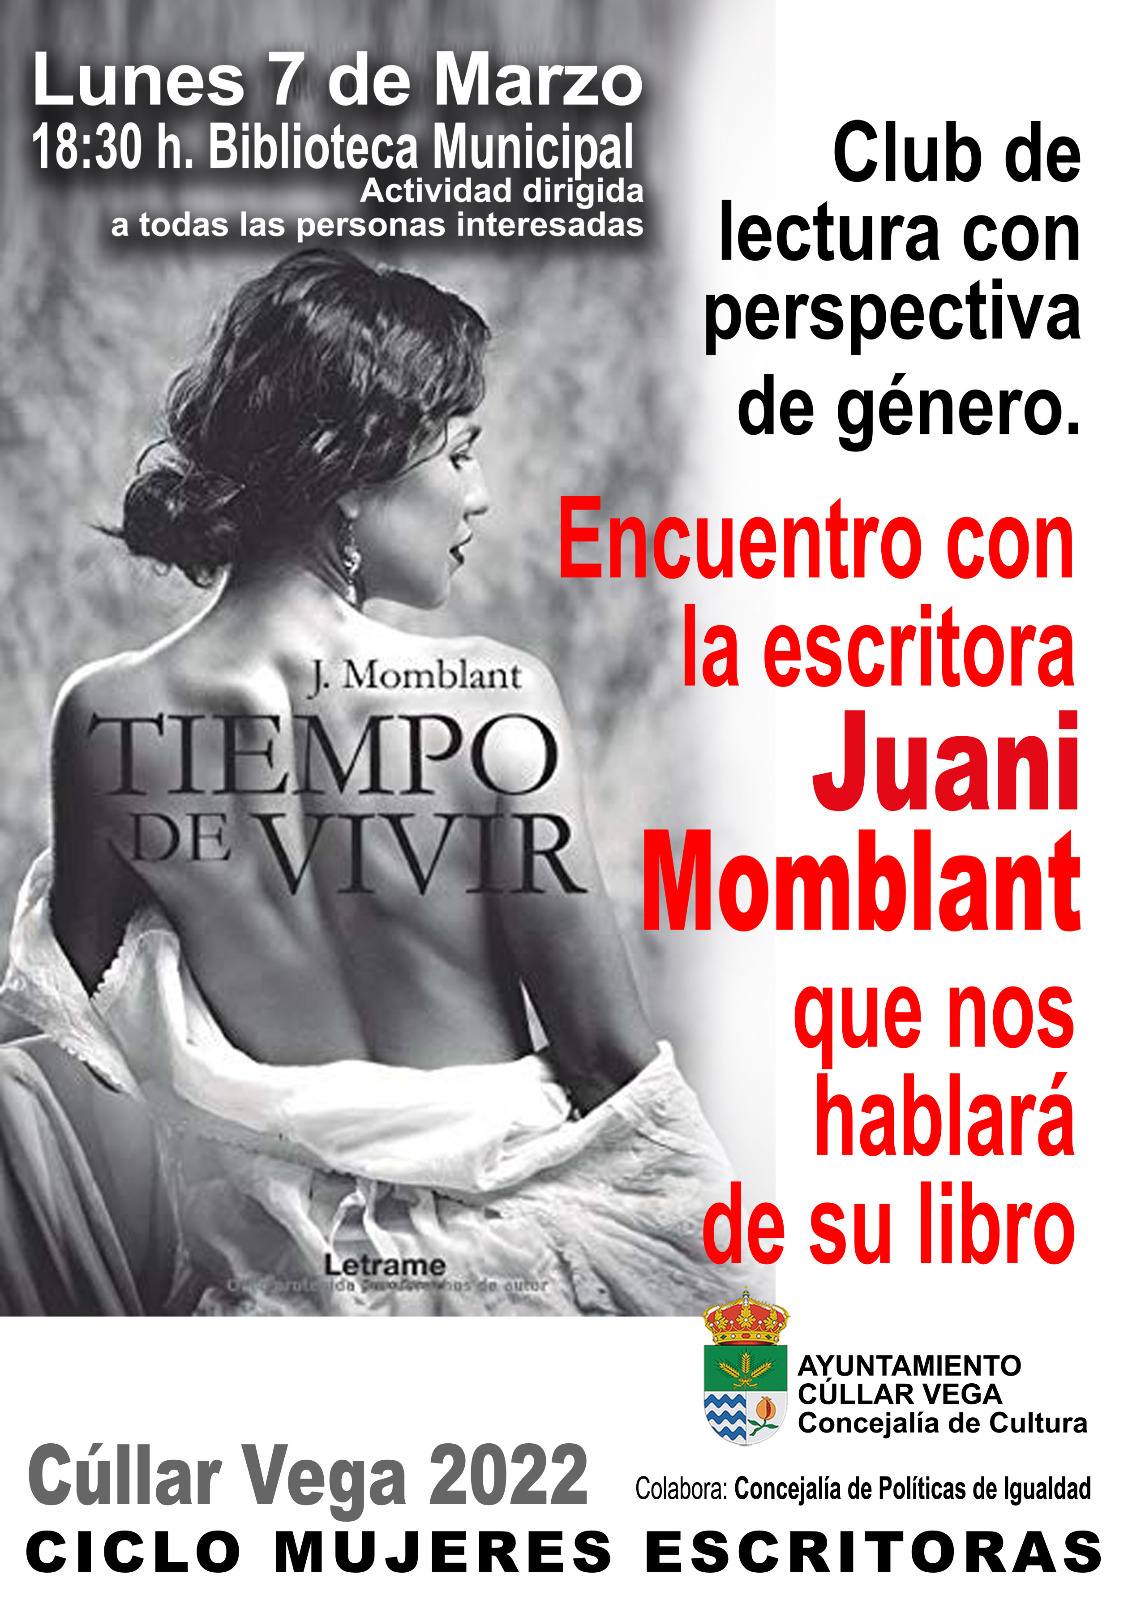 La biblioteca de Cúllar Vega acoge la presentación del libro ‘Tiempo de vivir’ de Juani Momblant